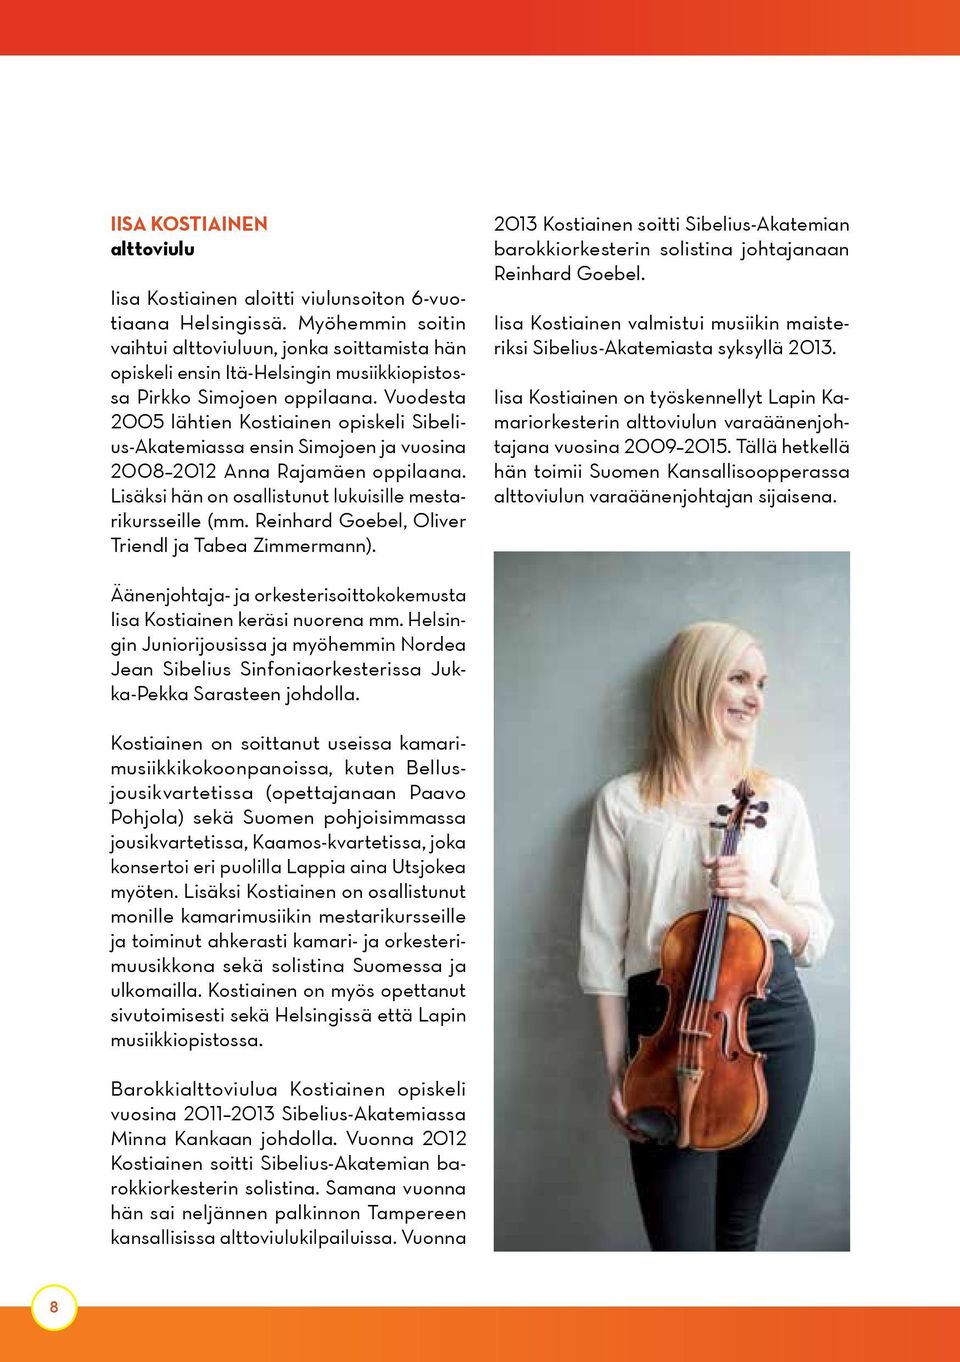 Vuodesta 2005 lähtien Kostiainen opiskeli Sibelius-Akatemiassa ensin Simojoen ja vuosina 2008 2012 Anna Rajamäen oppilaana. Lisäksi hän on osallistunut lukuisille mestarikursseille (mm.